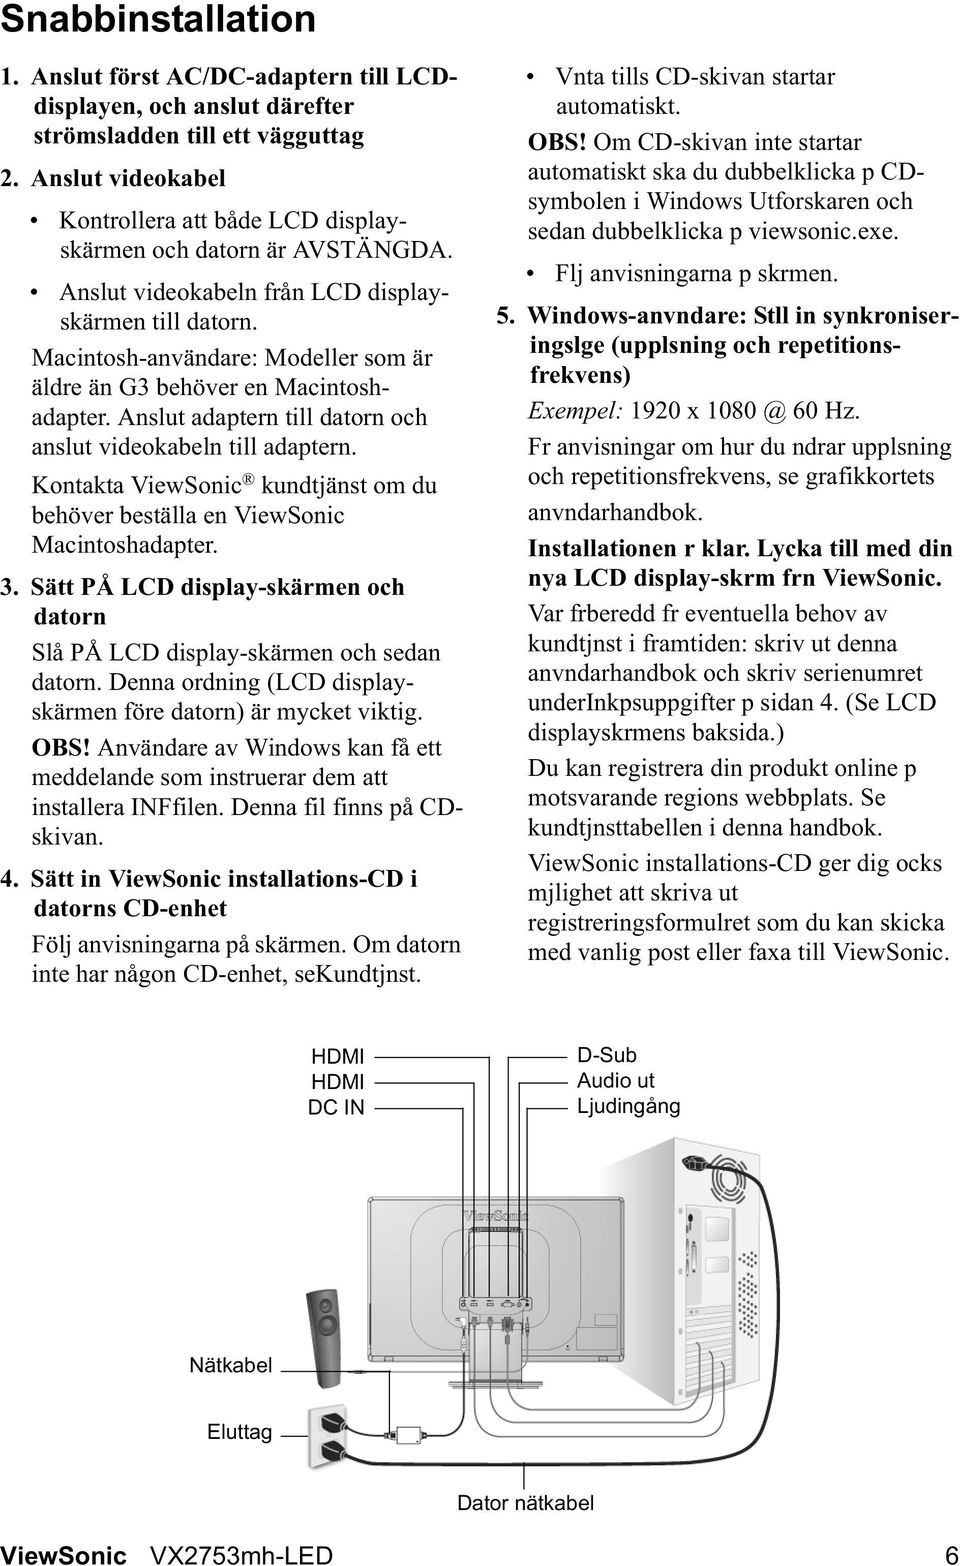 Macintosh-användare: Modeller som är äldre än G3 behöver en Macintoshadapter. Anslut adaptern till datorn och anslut videokabeln till adaptern.